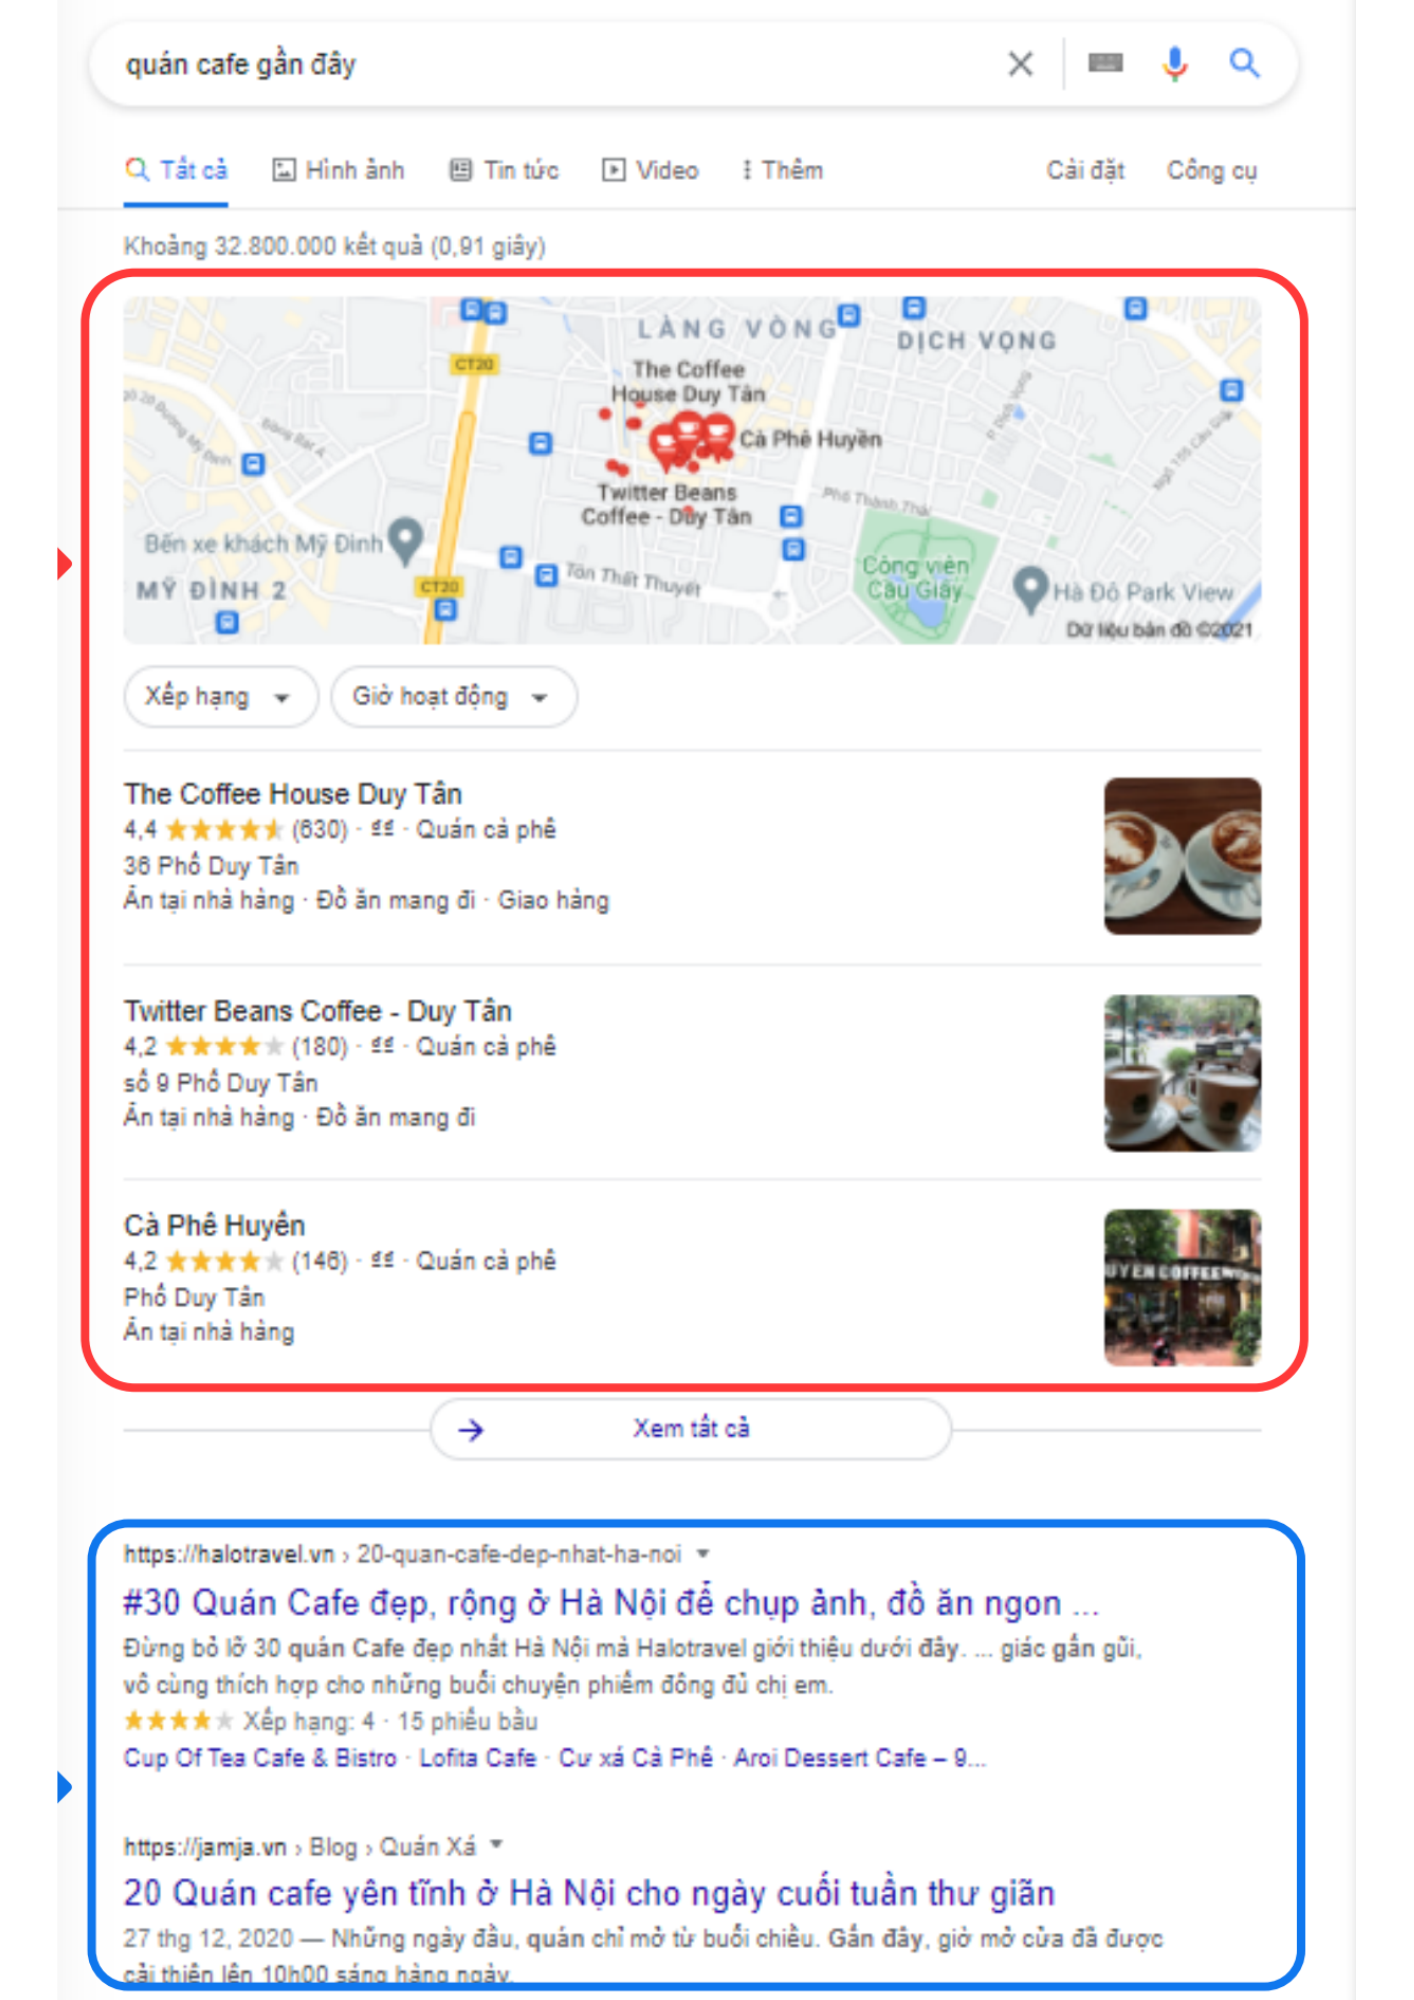 seo địa điểm phục vụ hoạt động marketing khi kinh doanh nhà hàng